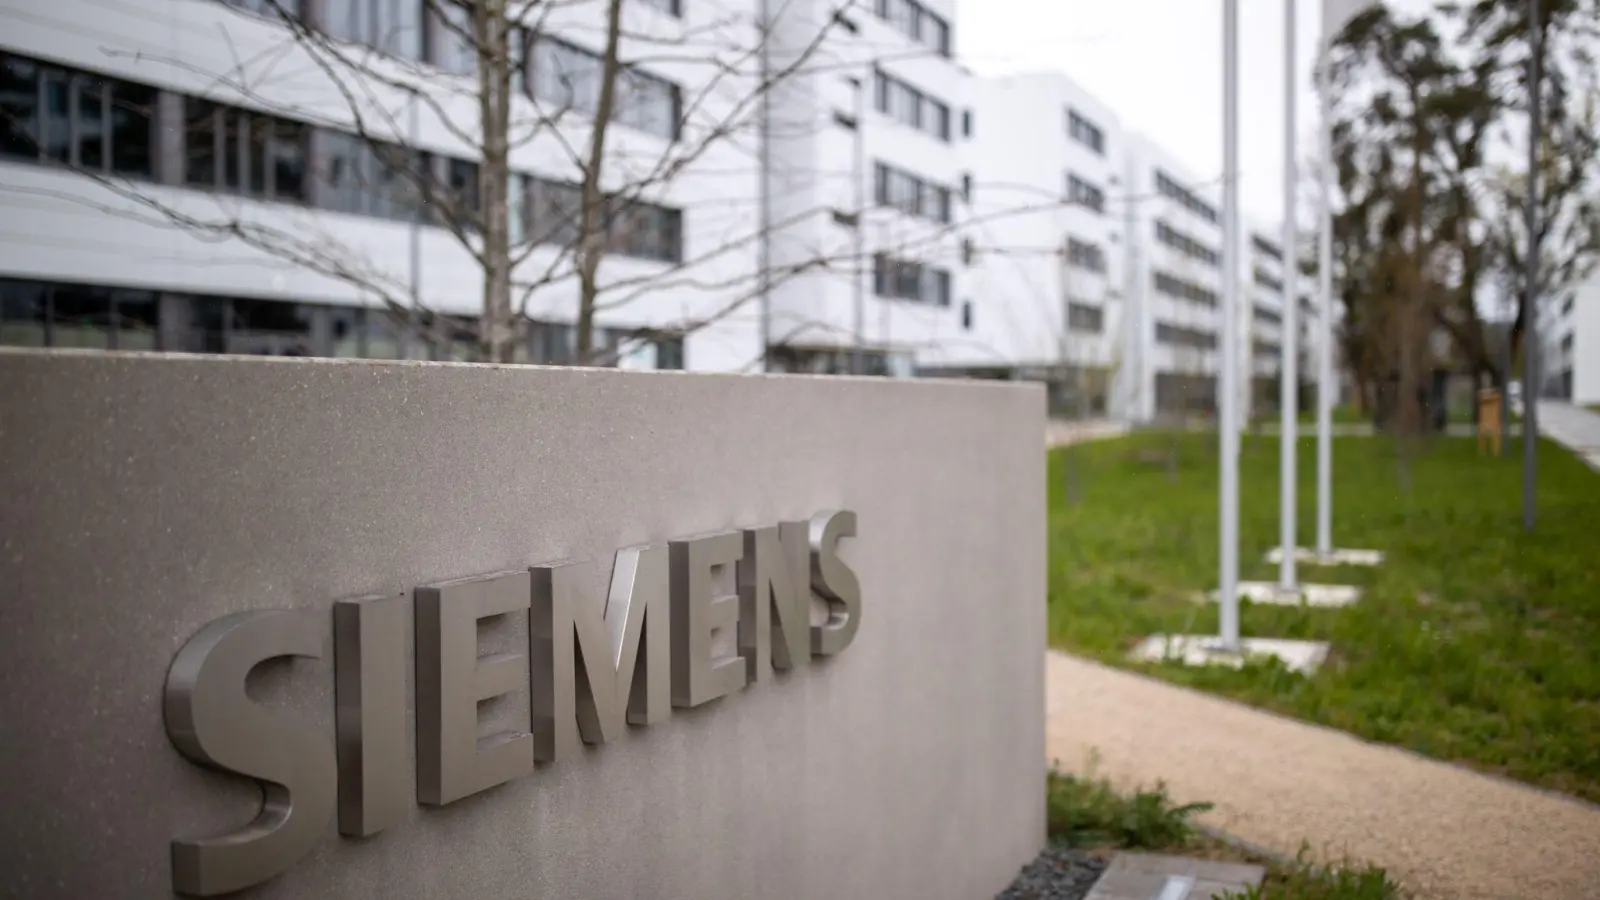 Das Schriftzug-Logo des deutschen Industriekonzerns Siemens. (Foto: Daniel Karmann/dpa/Archivbild)